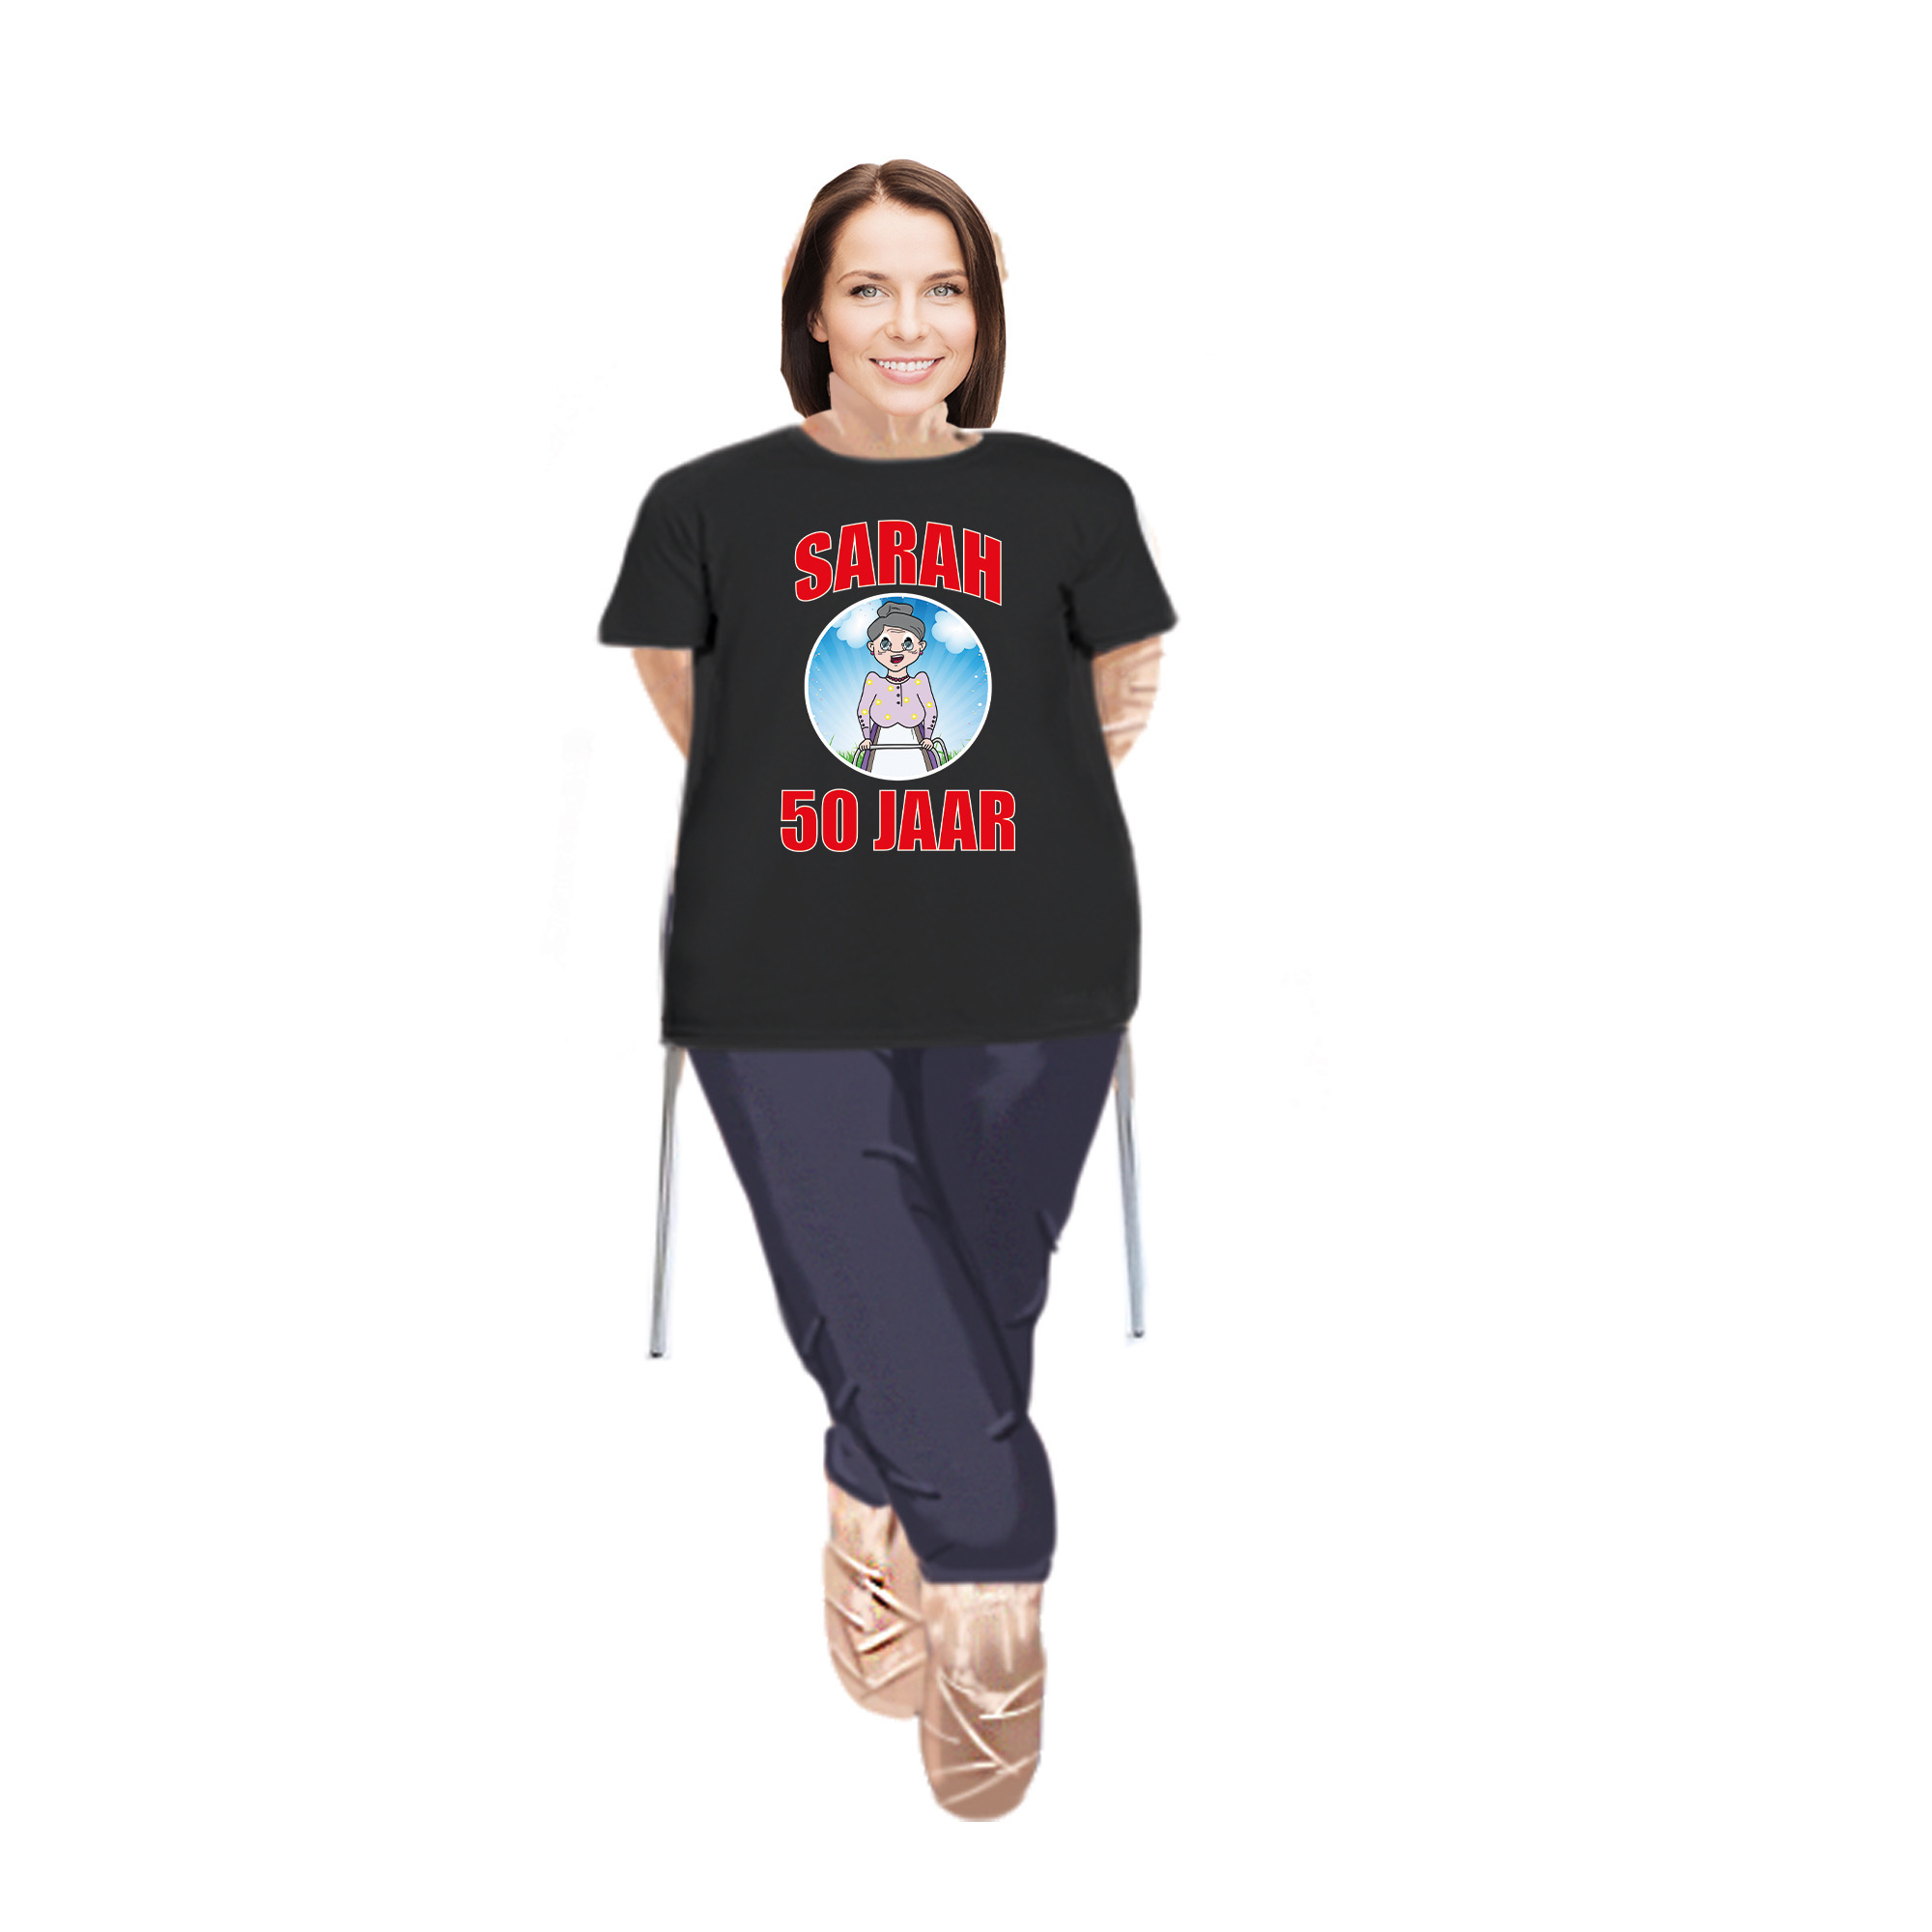 Sarah pop opvulbaar met Sarah pop shirt/ kleding